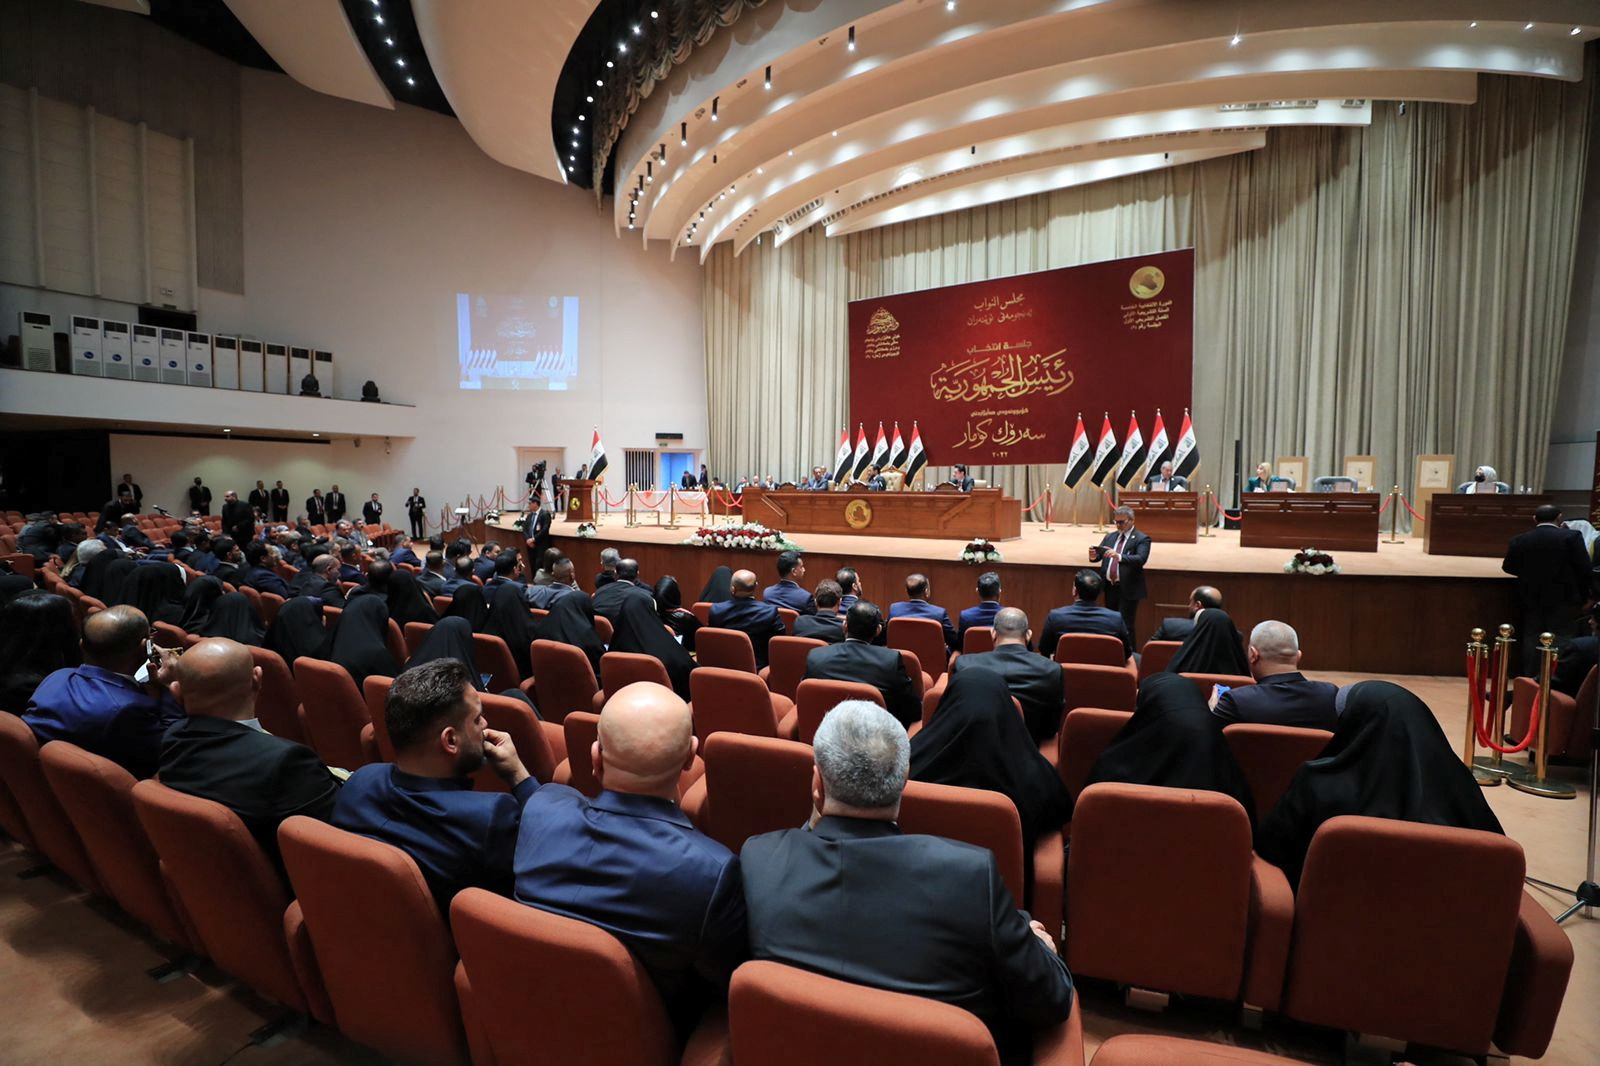 برلمان العراق يخفق في انتخاب رئيس جديد للبلاد لعدم اكتمال النصاب القانوني